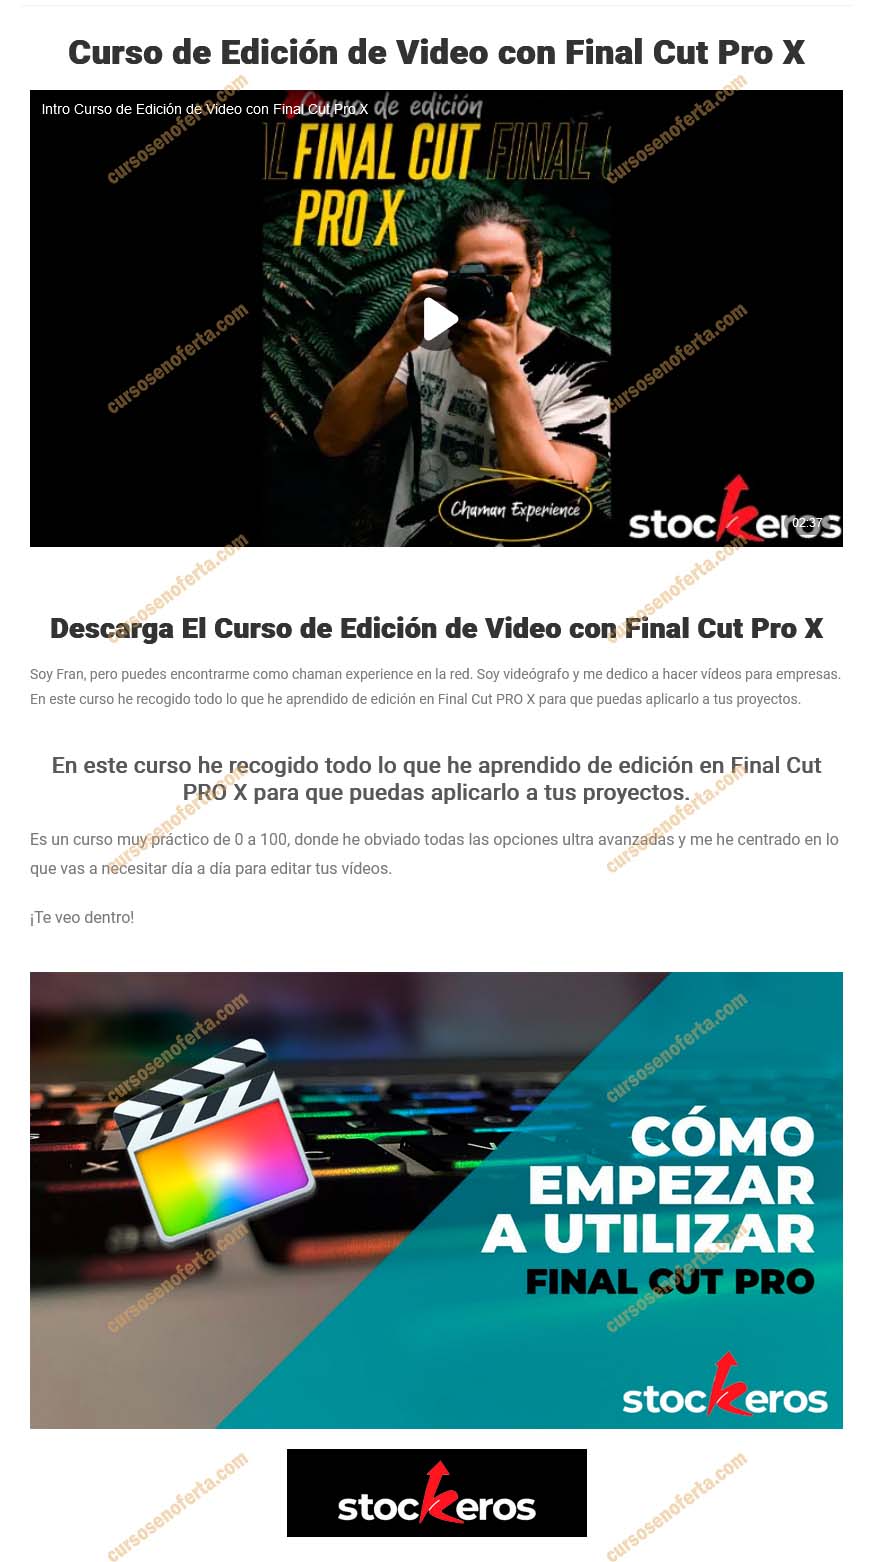 Curso de edición de video Final Cut Pro X - stockeros